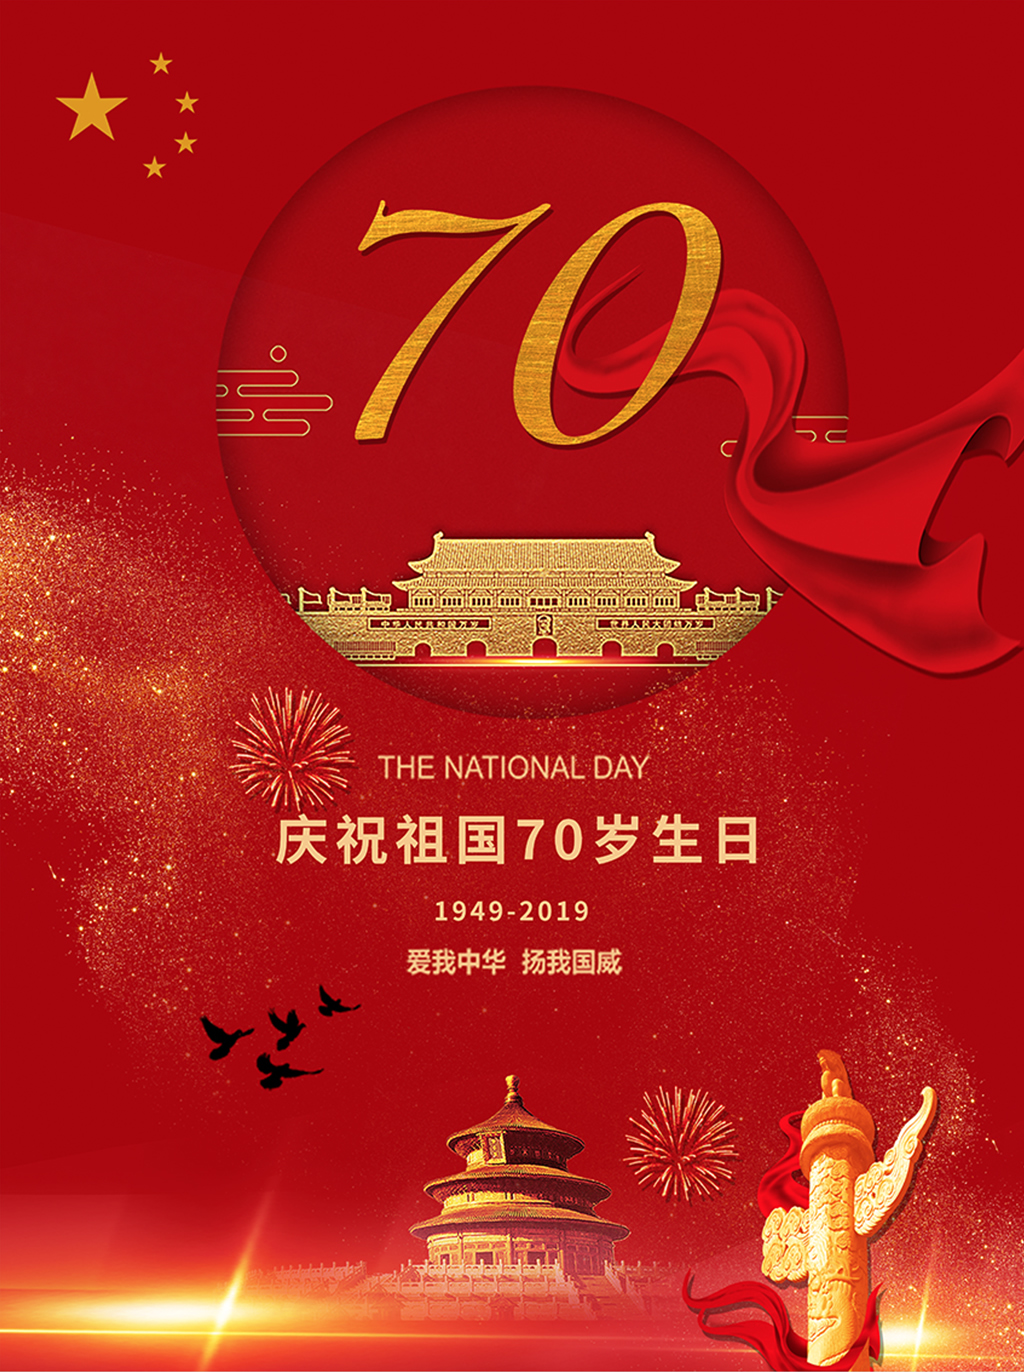 庆祝中华人民共和国成立70周年 - 化州信息网 - 化州信息网